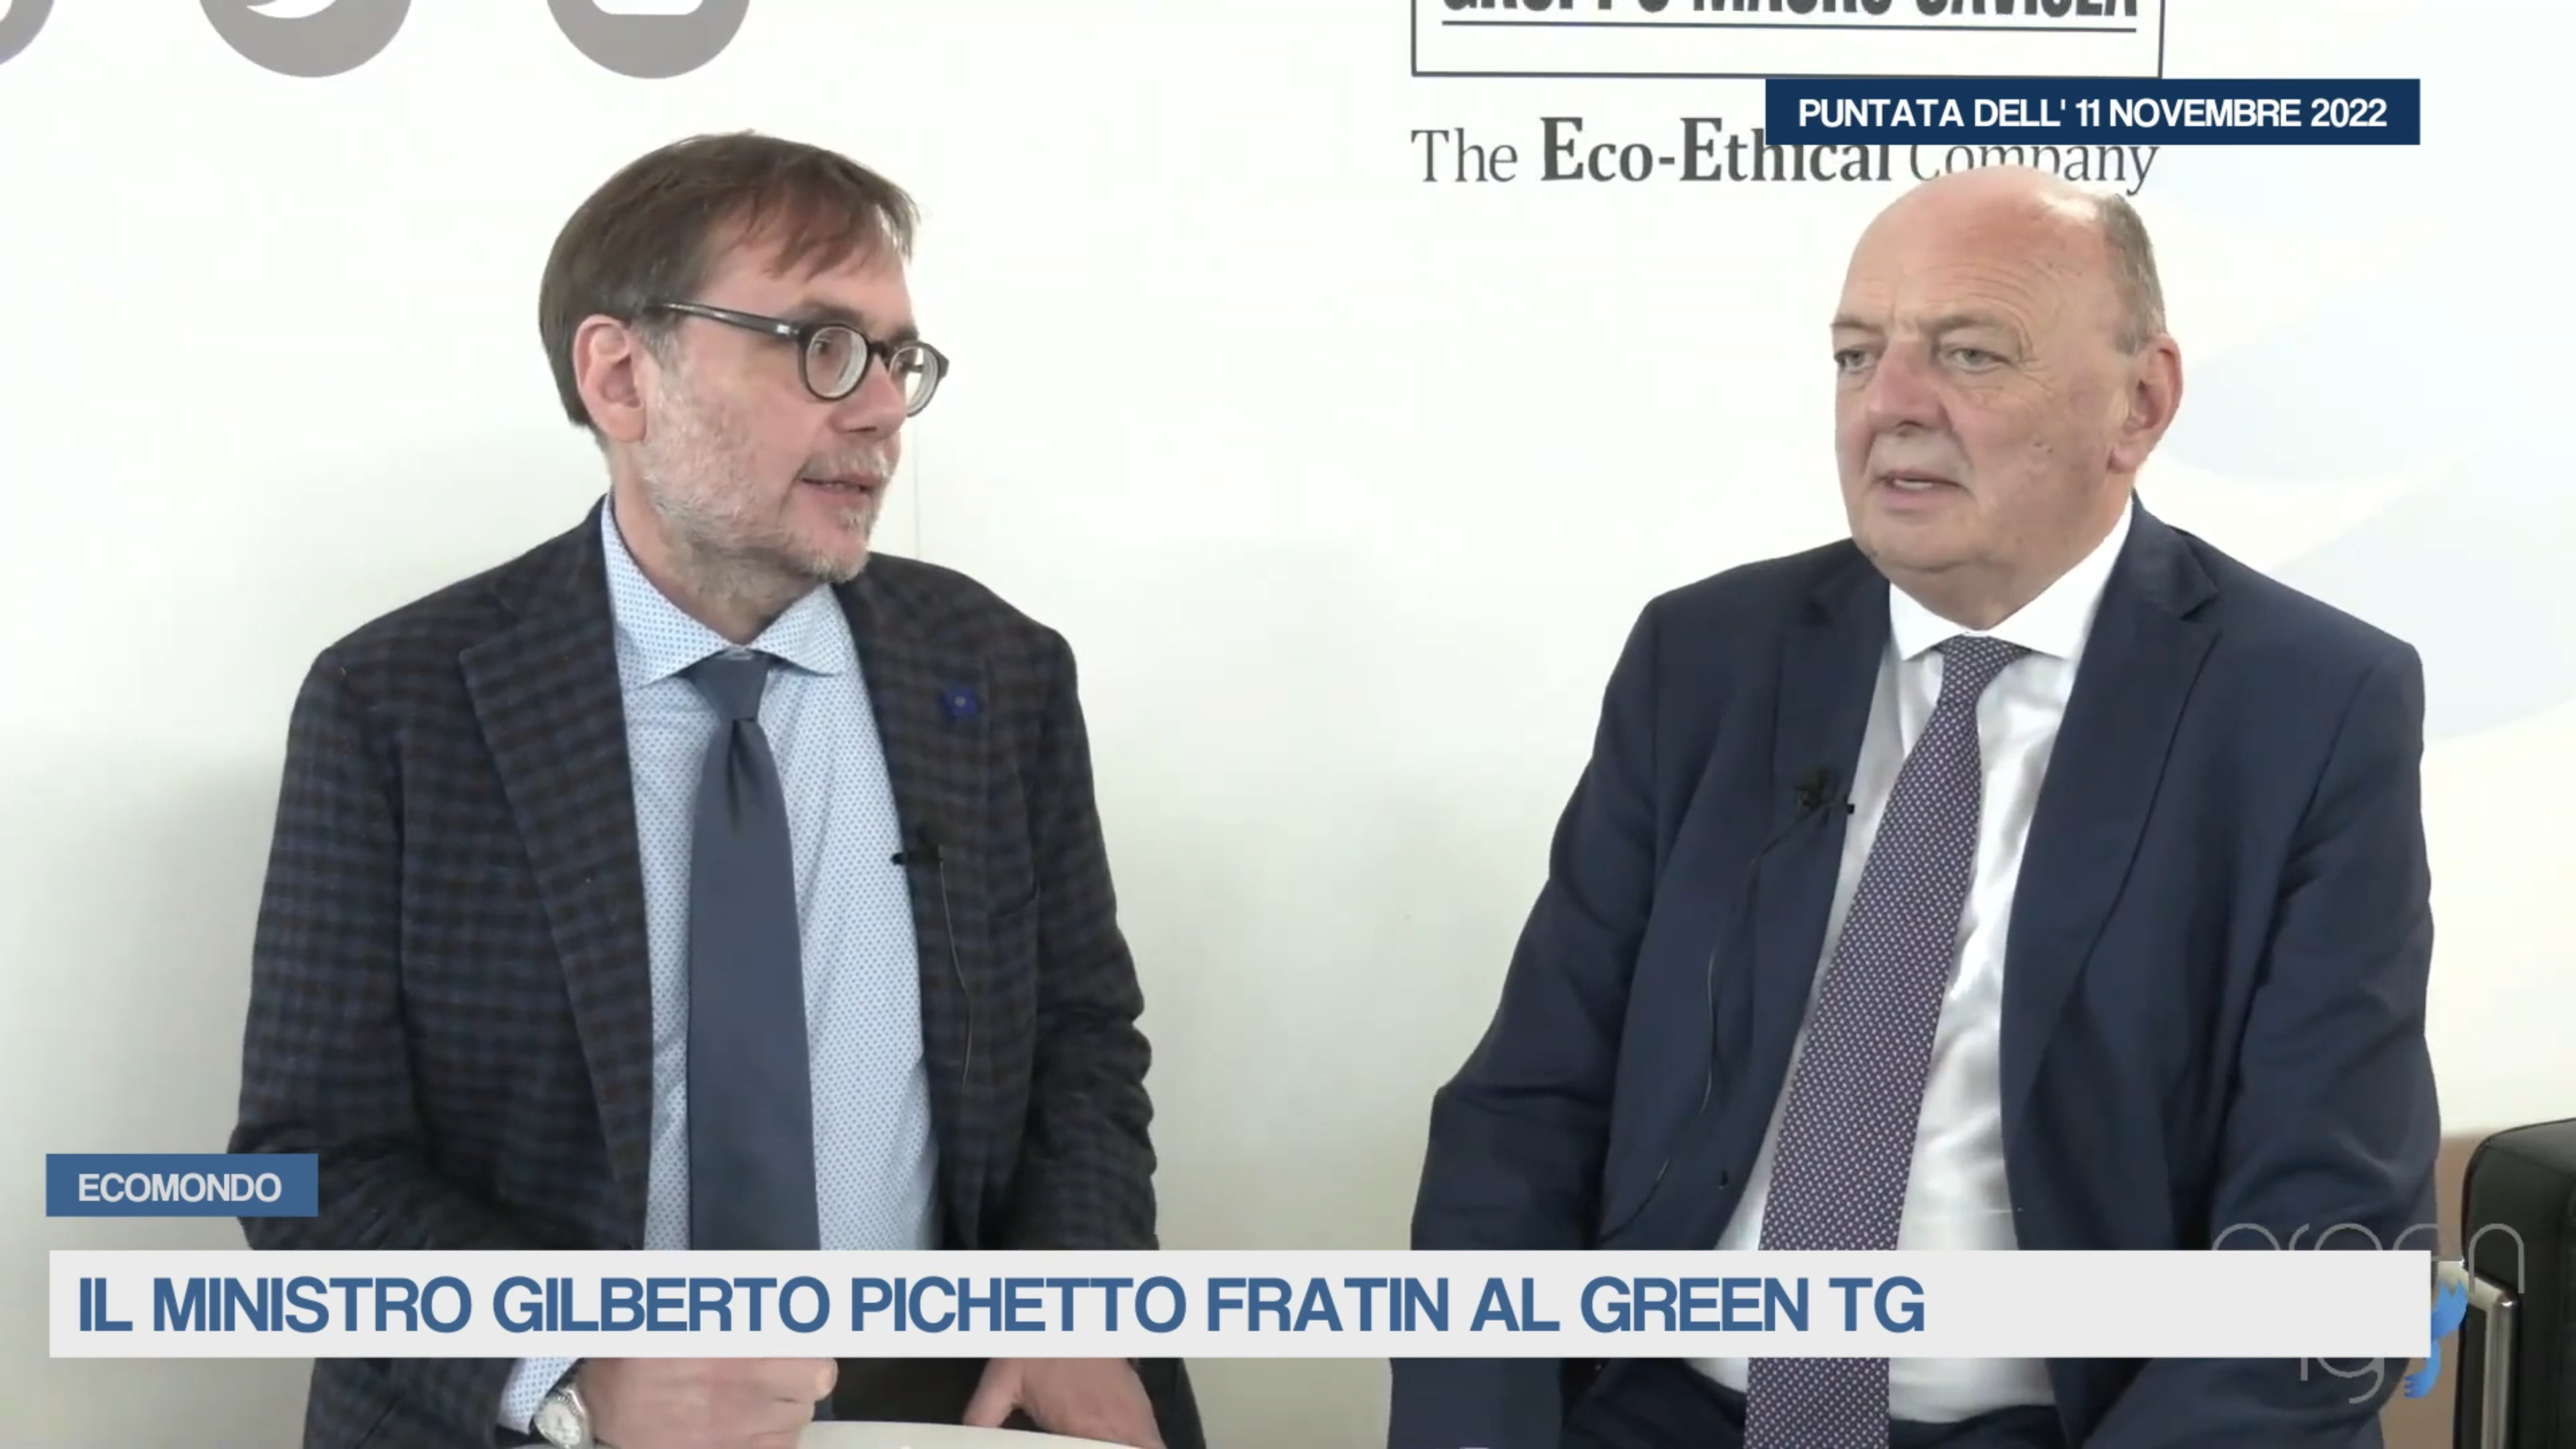 Il Ministro Gilberto Pichetto Fratin al Green Tg